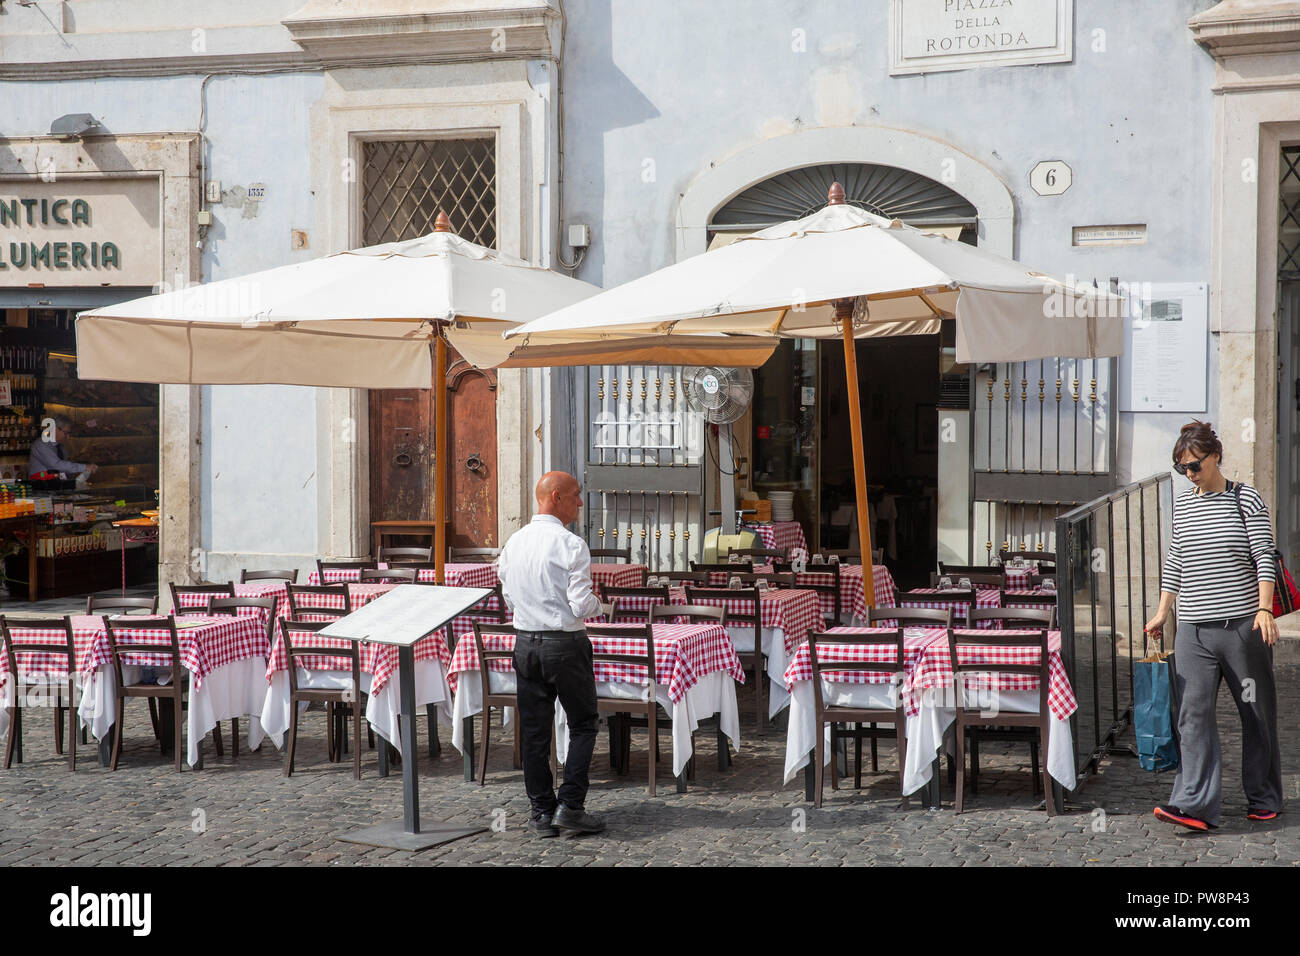 Traditionelle rote und weiße Tischdecken auf italienischen Restaurants in Piazza della Rotonda, das Stadtzentrum von Rom, Latium, Italien Stockfoto